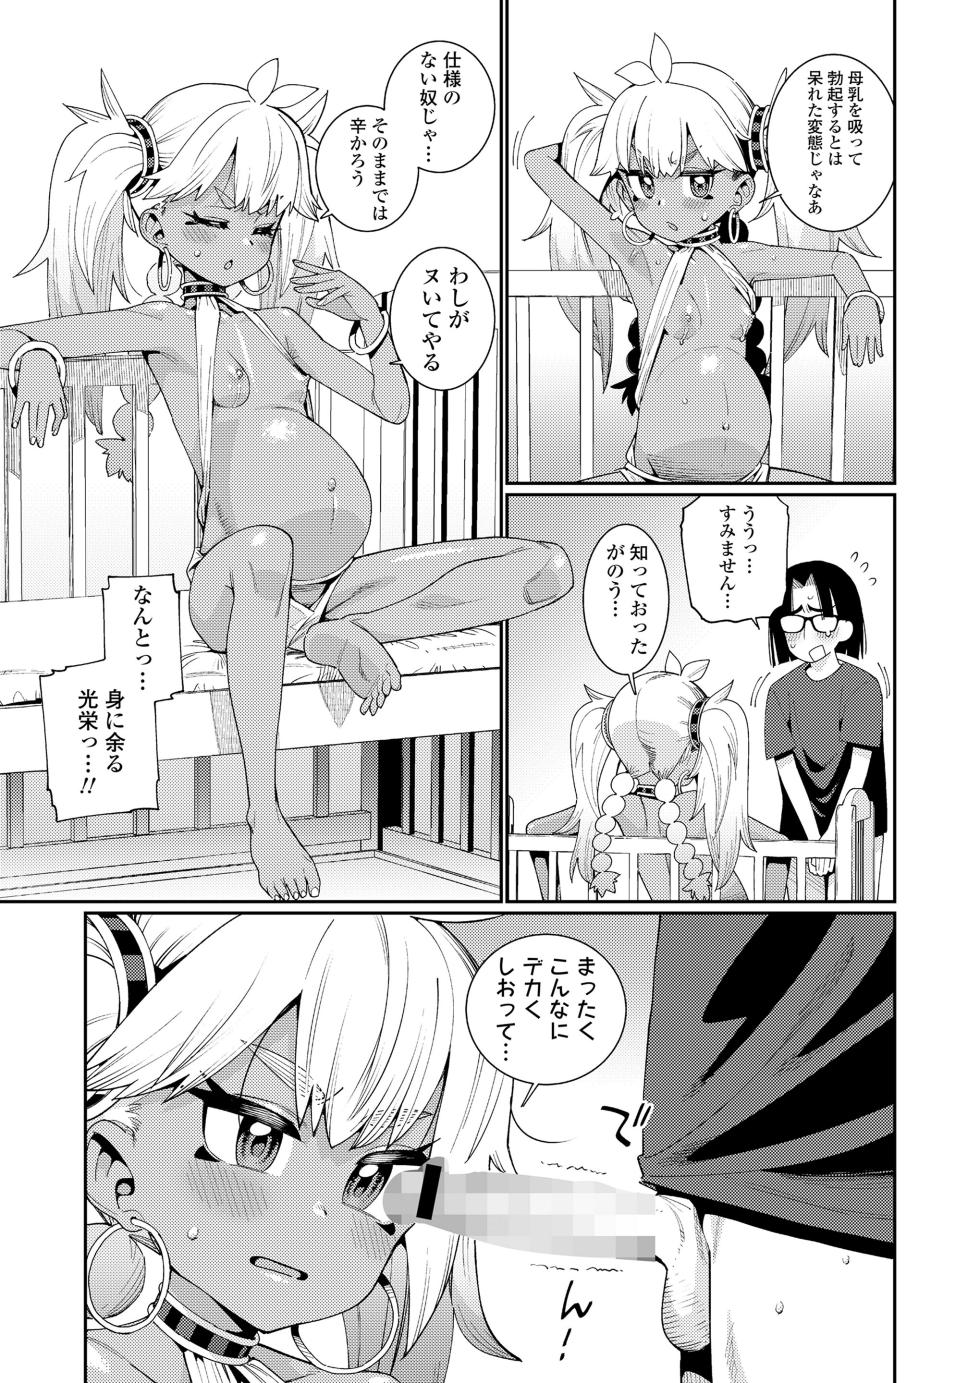 Towako 16 [Digital] - Page 11